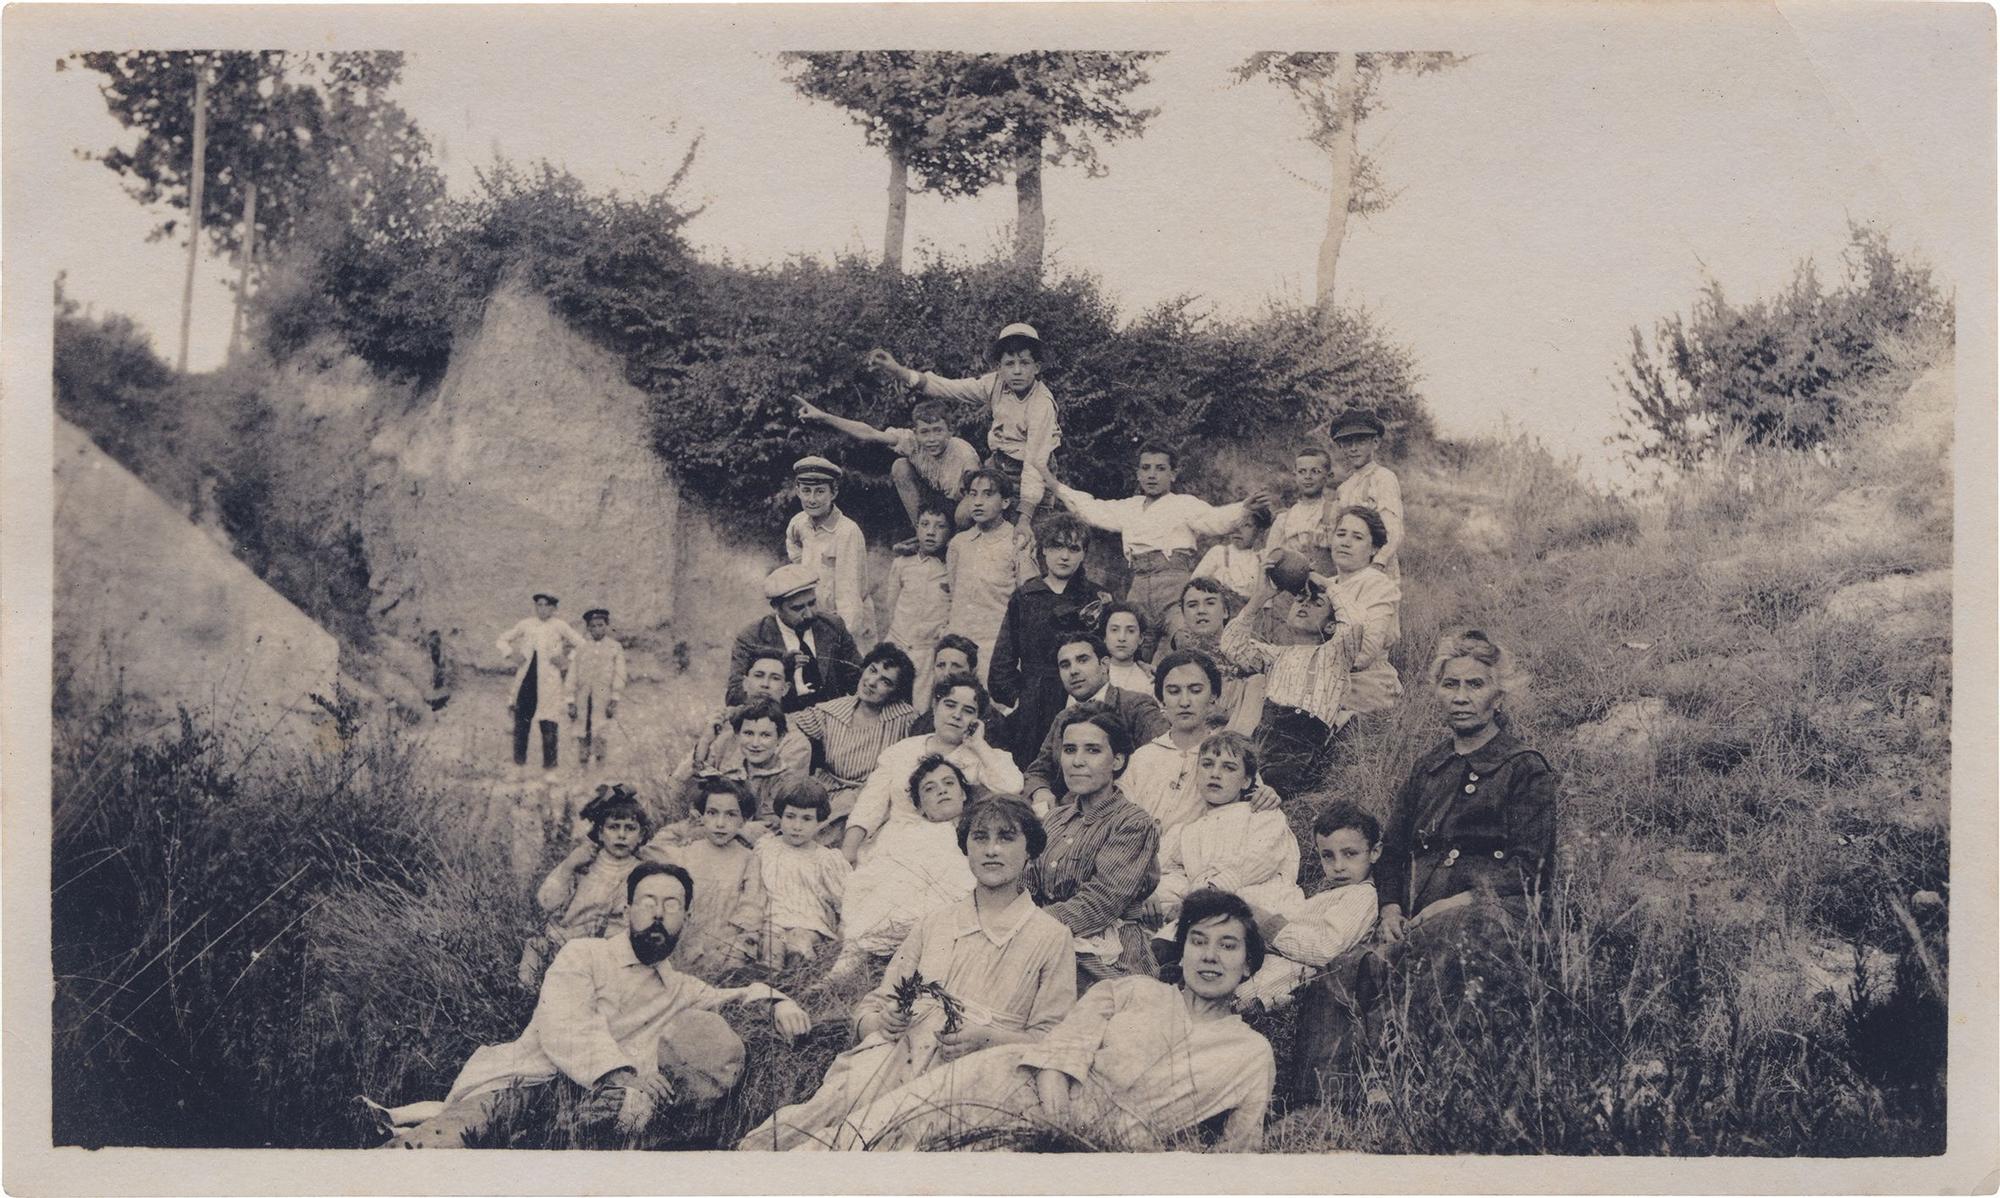 Retrat d’un grup de l’Ateneu Igualadí de la Classe Obrera d’excursió a la Llacuna, a la dècada del 1920